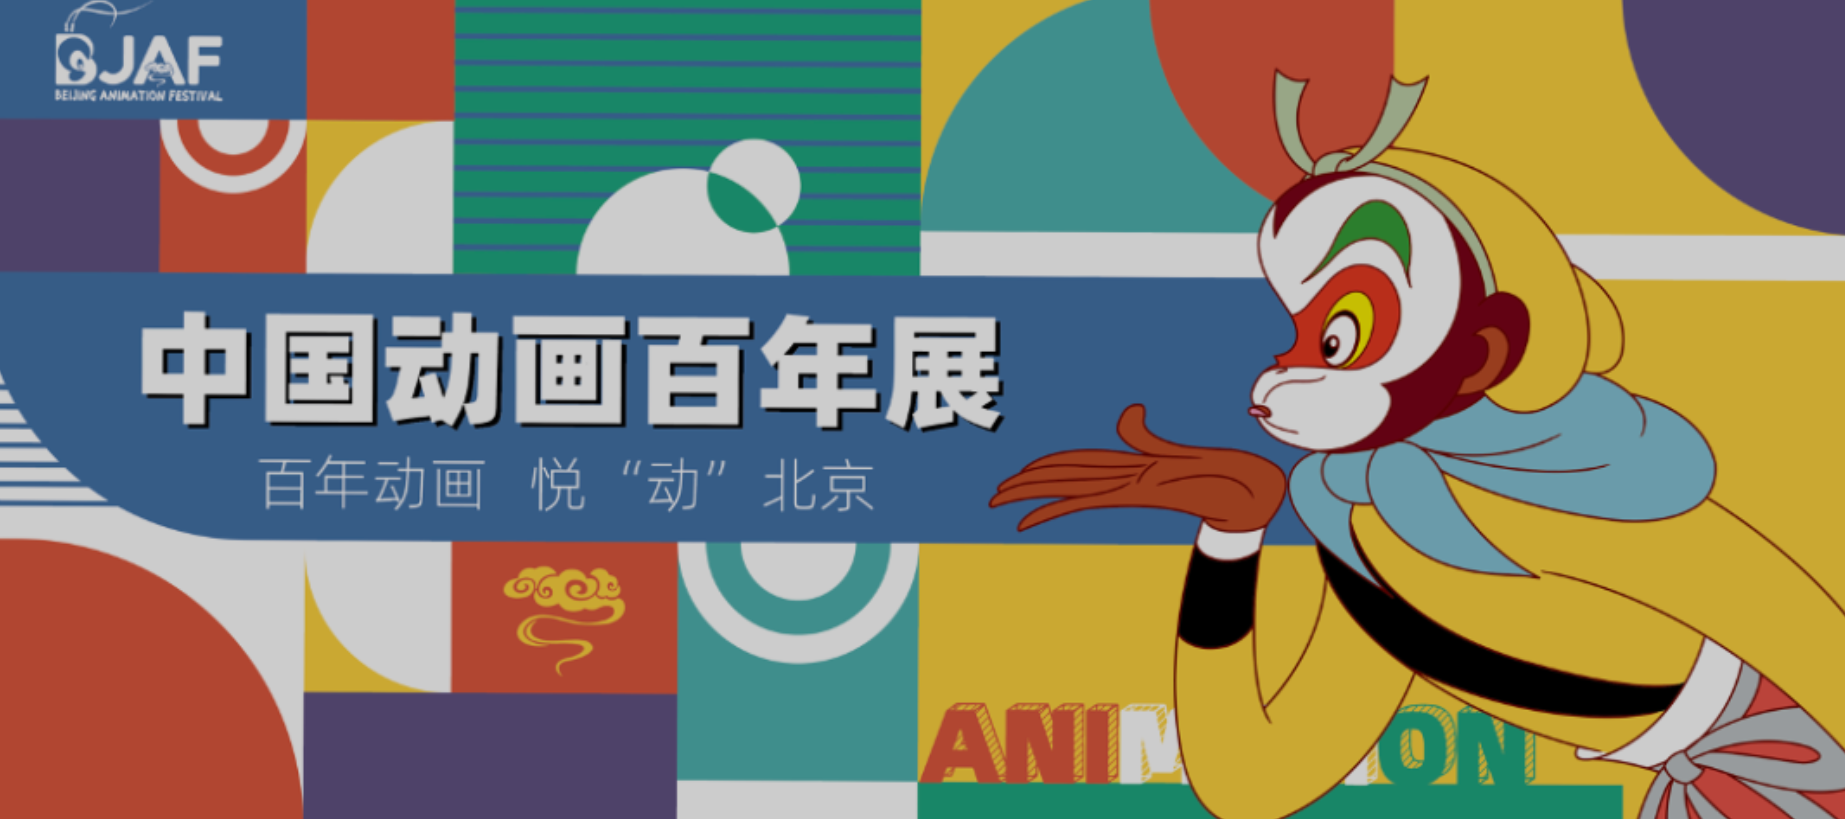 动画百年展｜致敬中国动画百年腾飞 展示中国动画百年成就